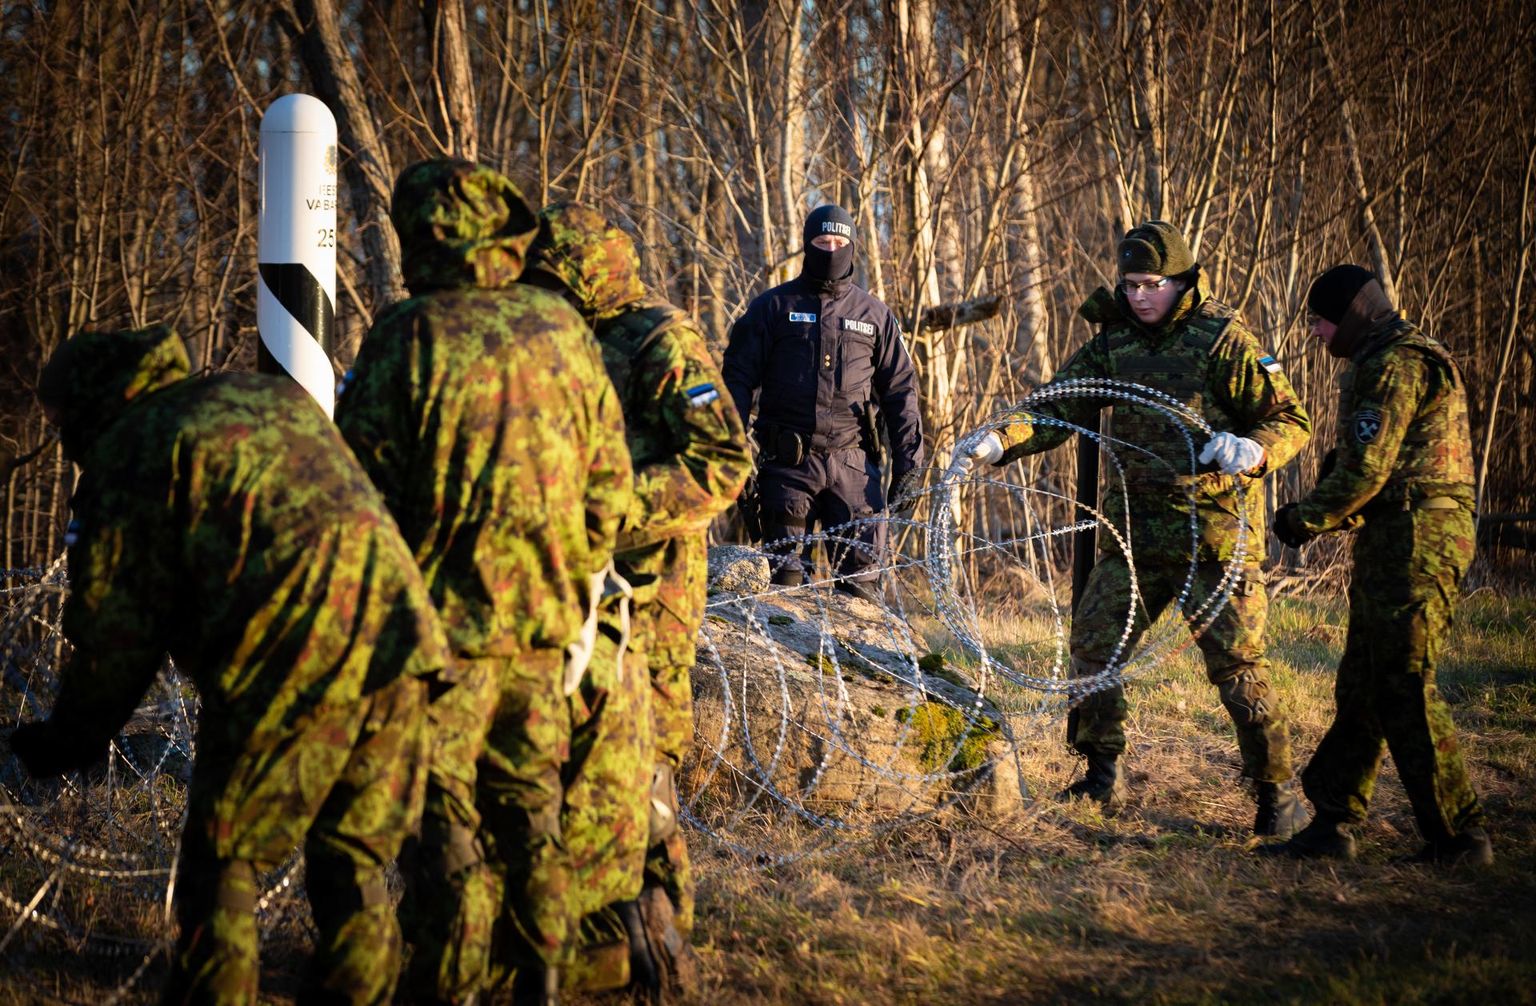 Kaitseväe õppuse Okas raames rajatakse Eesti-Venemaa piirile 40 kilomeetrit lõiketraadiga tõkkeaeda.